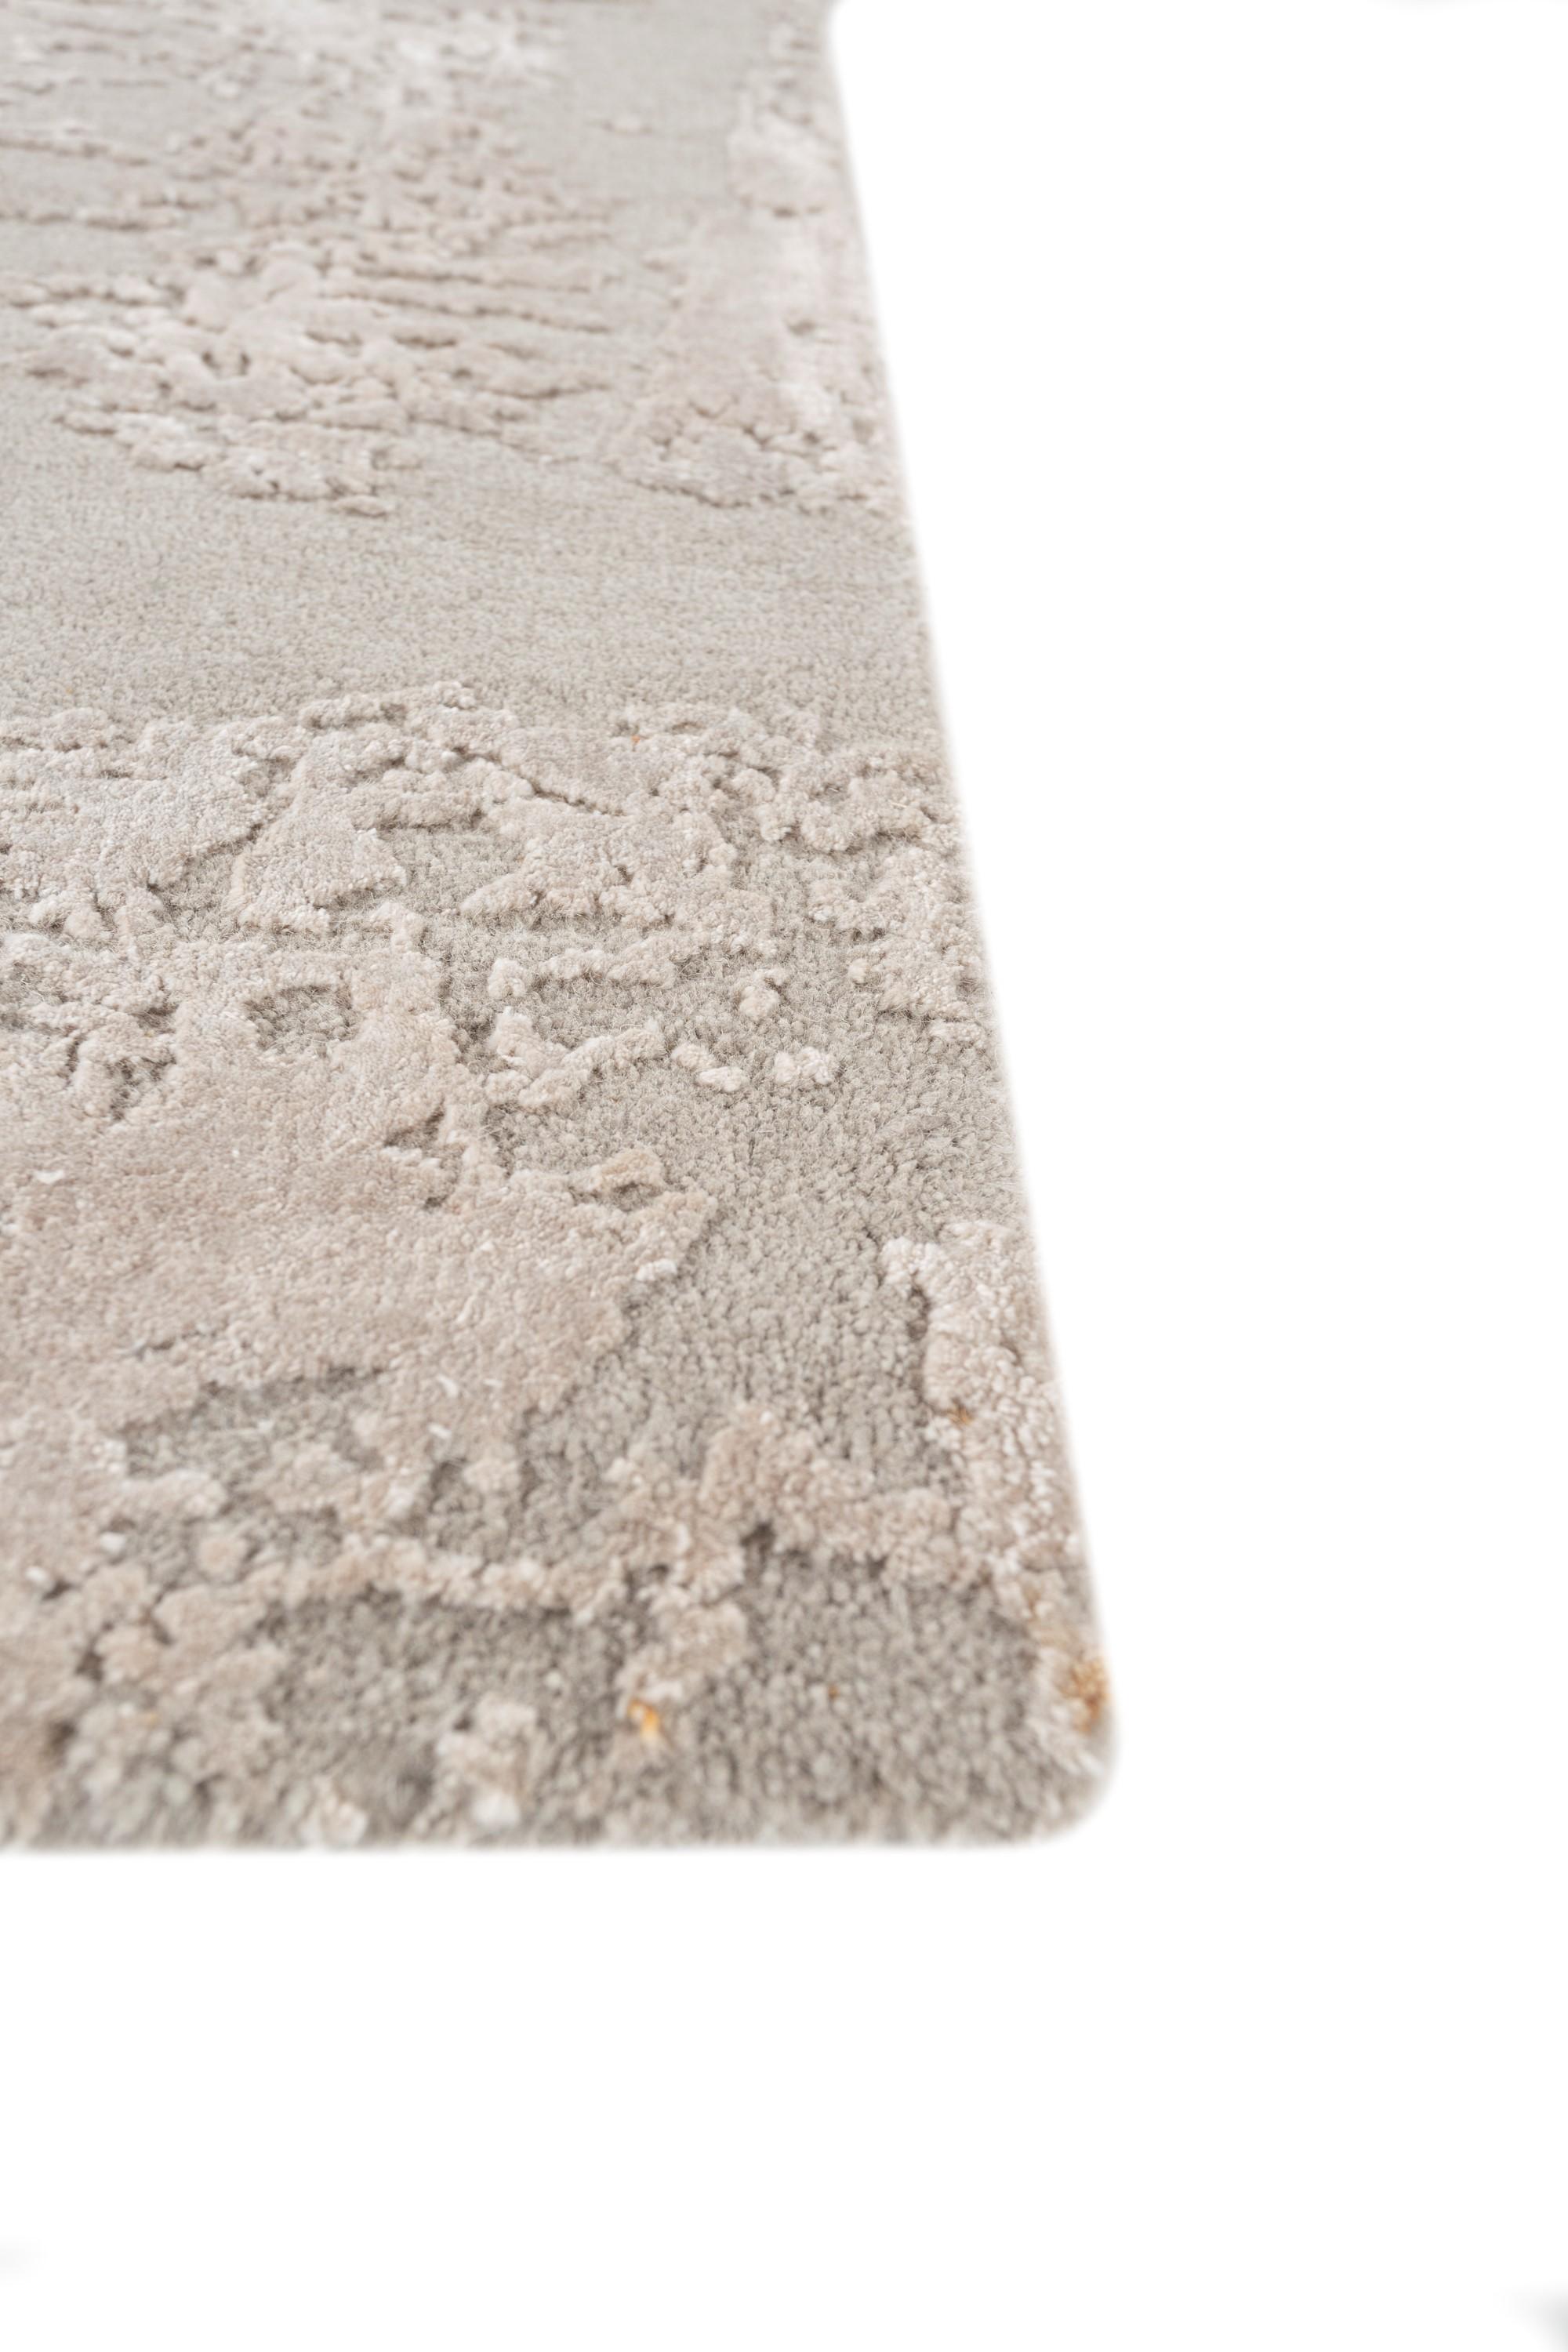 Tauchen Sie ein in die bezaubernde Verschmelzung von Design und Farbe mit dem exquisiten handgeknüpften Teppich aus der Project Error by Kavi Collection von Jaipur Rugs. Dieser zeitgenössische Teppich ist aus einer aufwendigen Kombination von Wolle